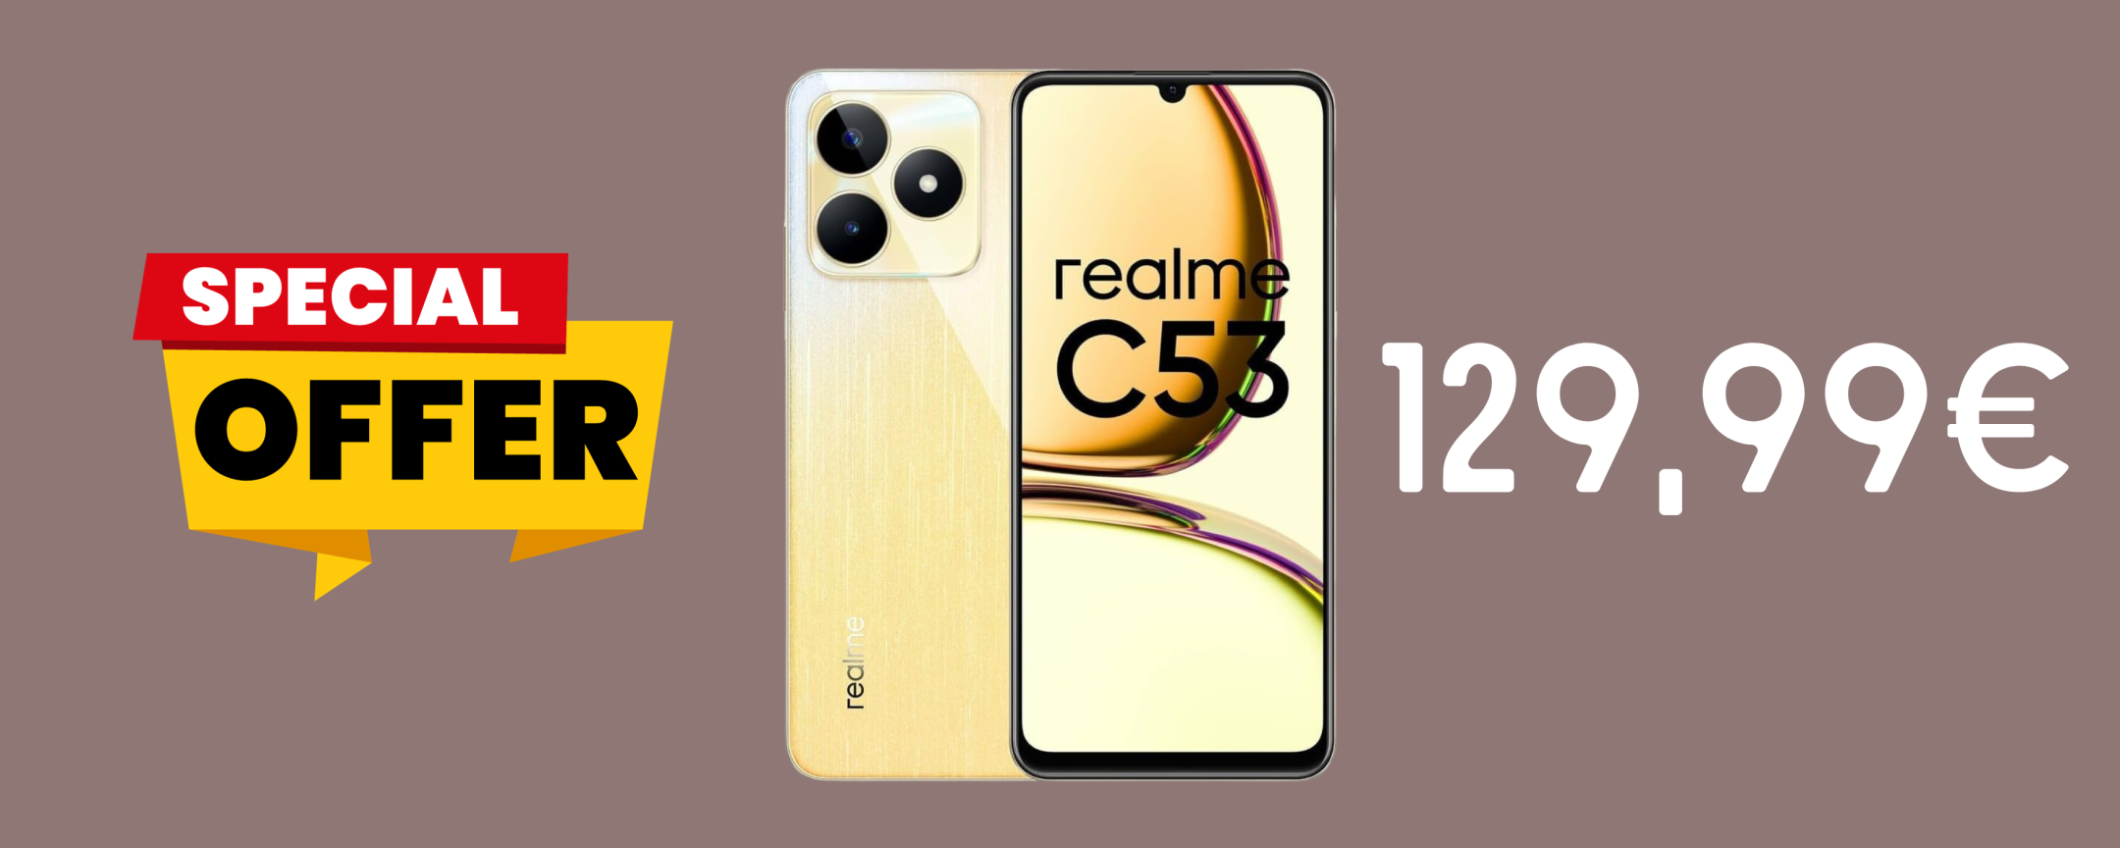 Realme C53, con ben 128 GB e SUPER batteria a SOLI 129,99€